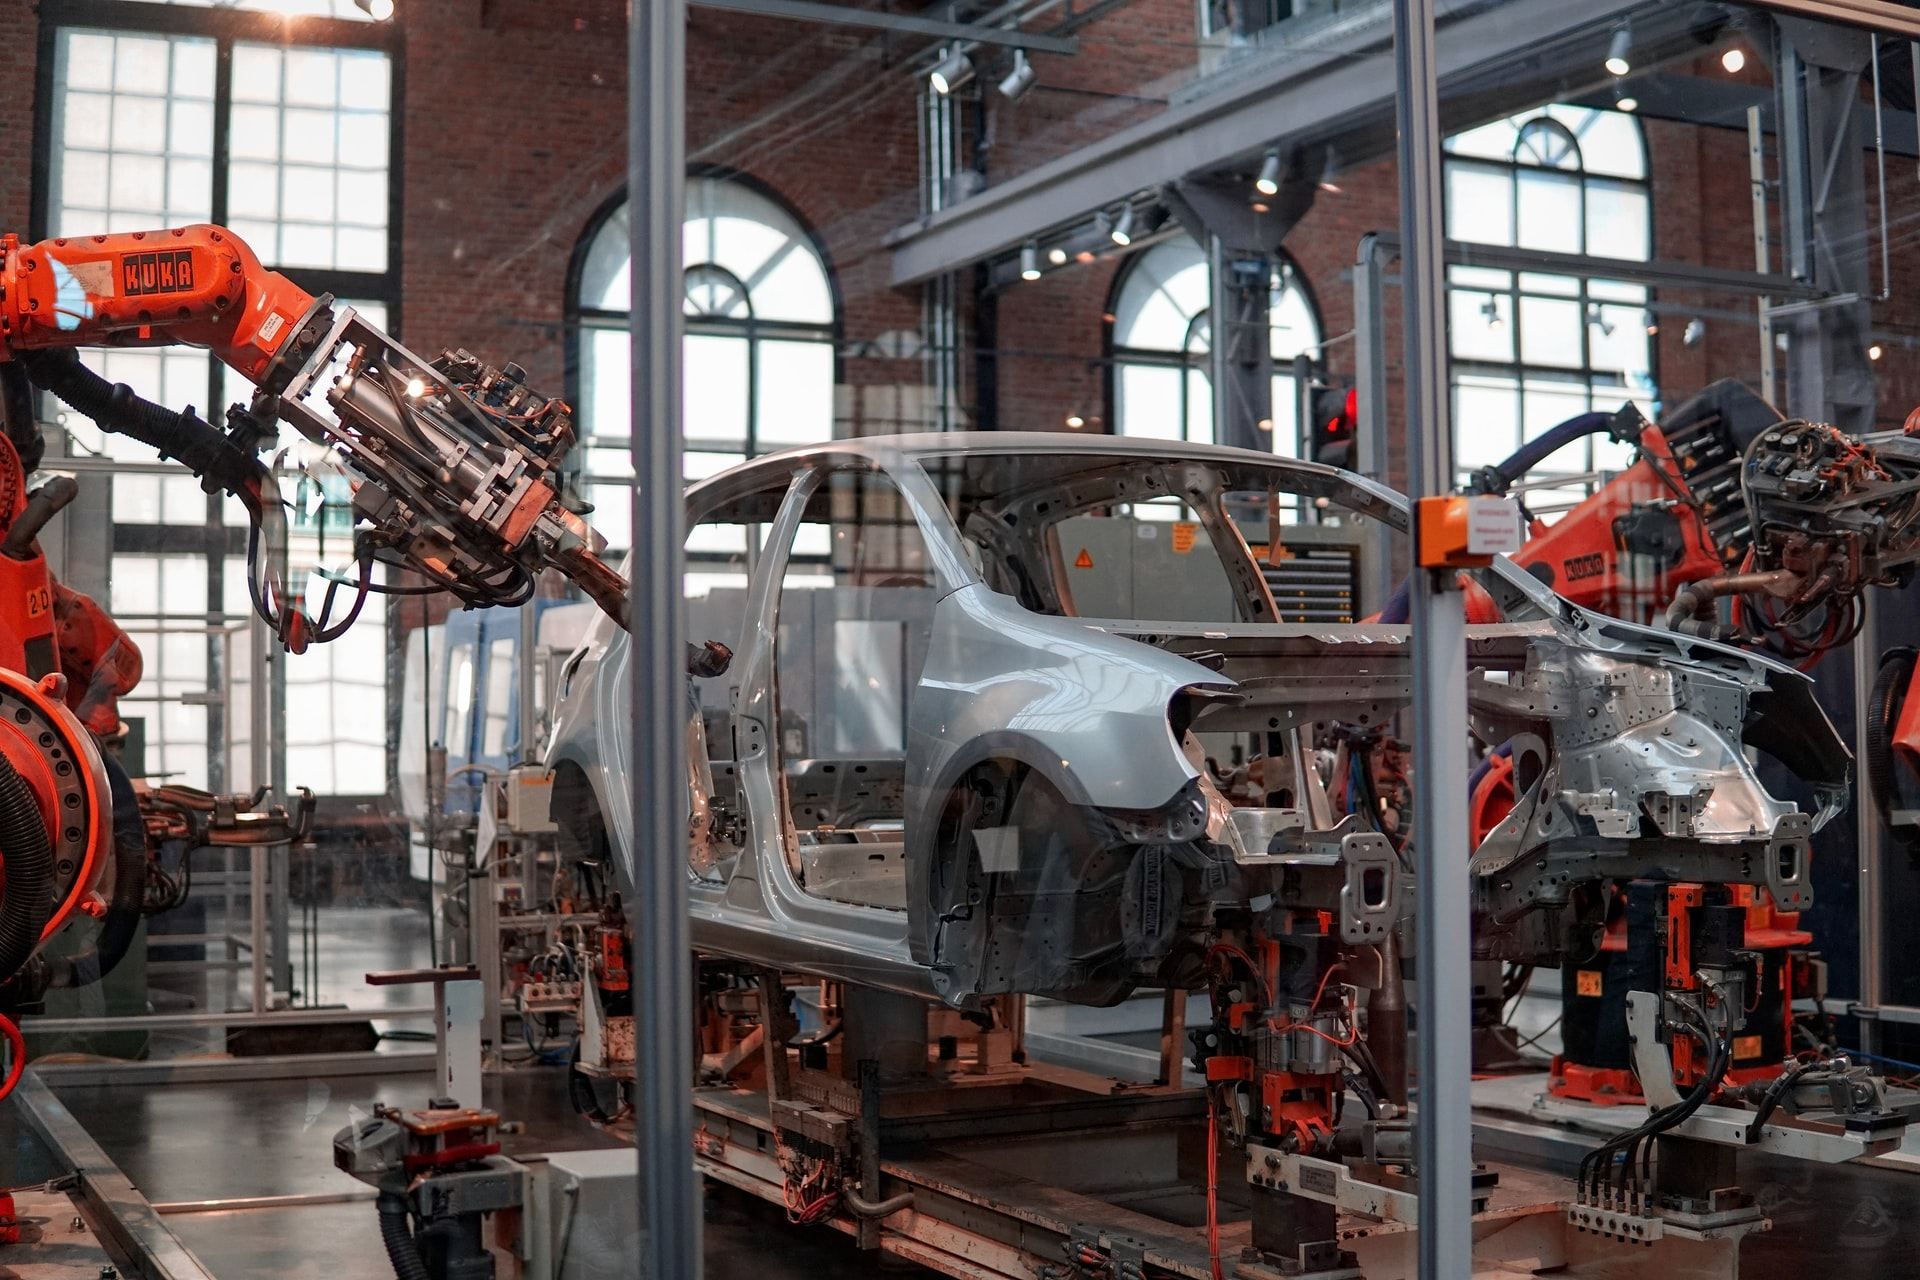 Роботи захоплюють світ: американський бізнес залучив у виробництво рекордну кількість машин - Новини технологій - Техно